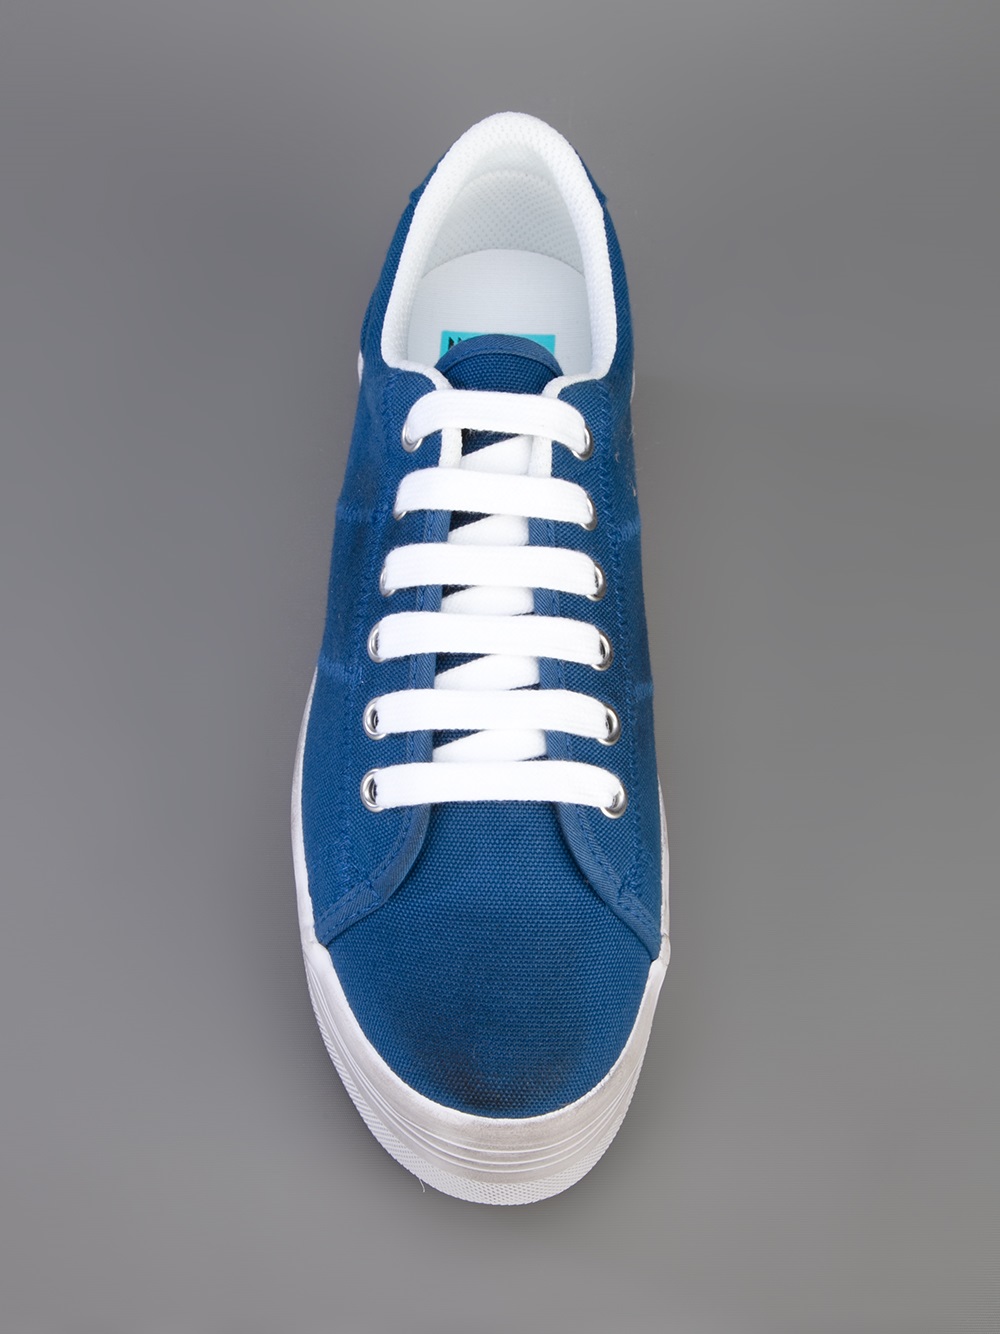 Jeffrey Campbell Platform Sneaker in Blue - Lyst